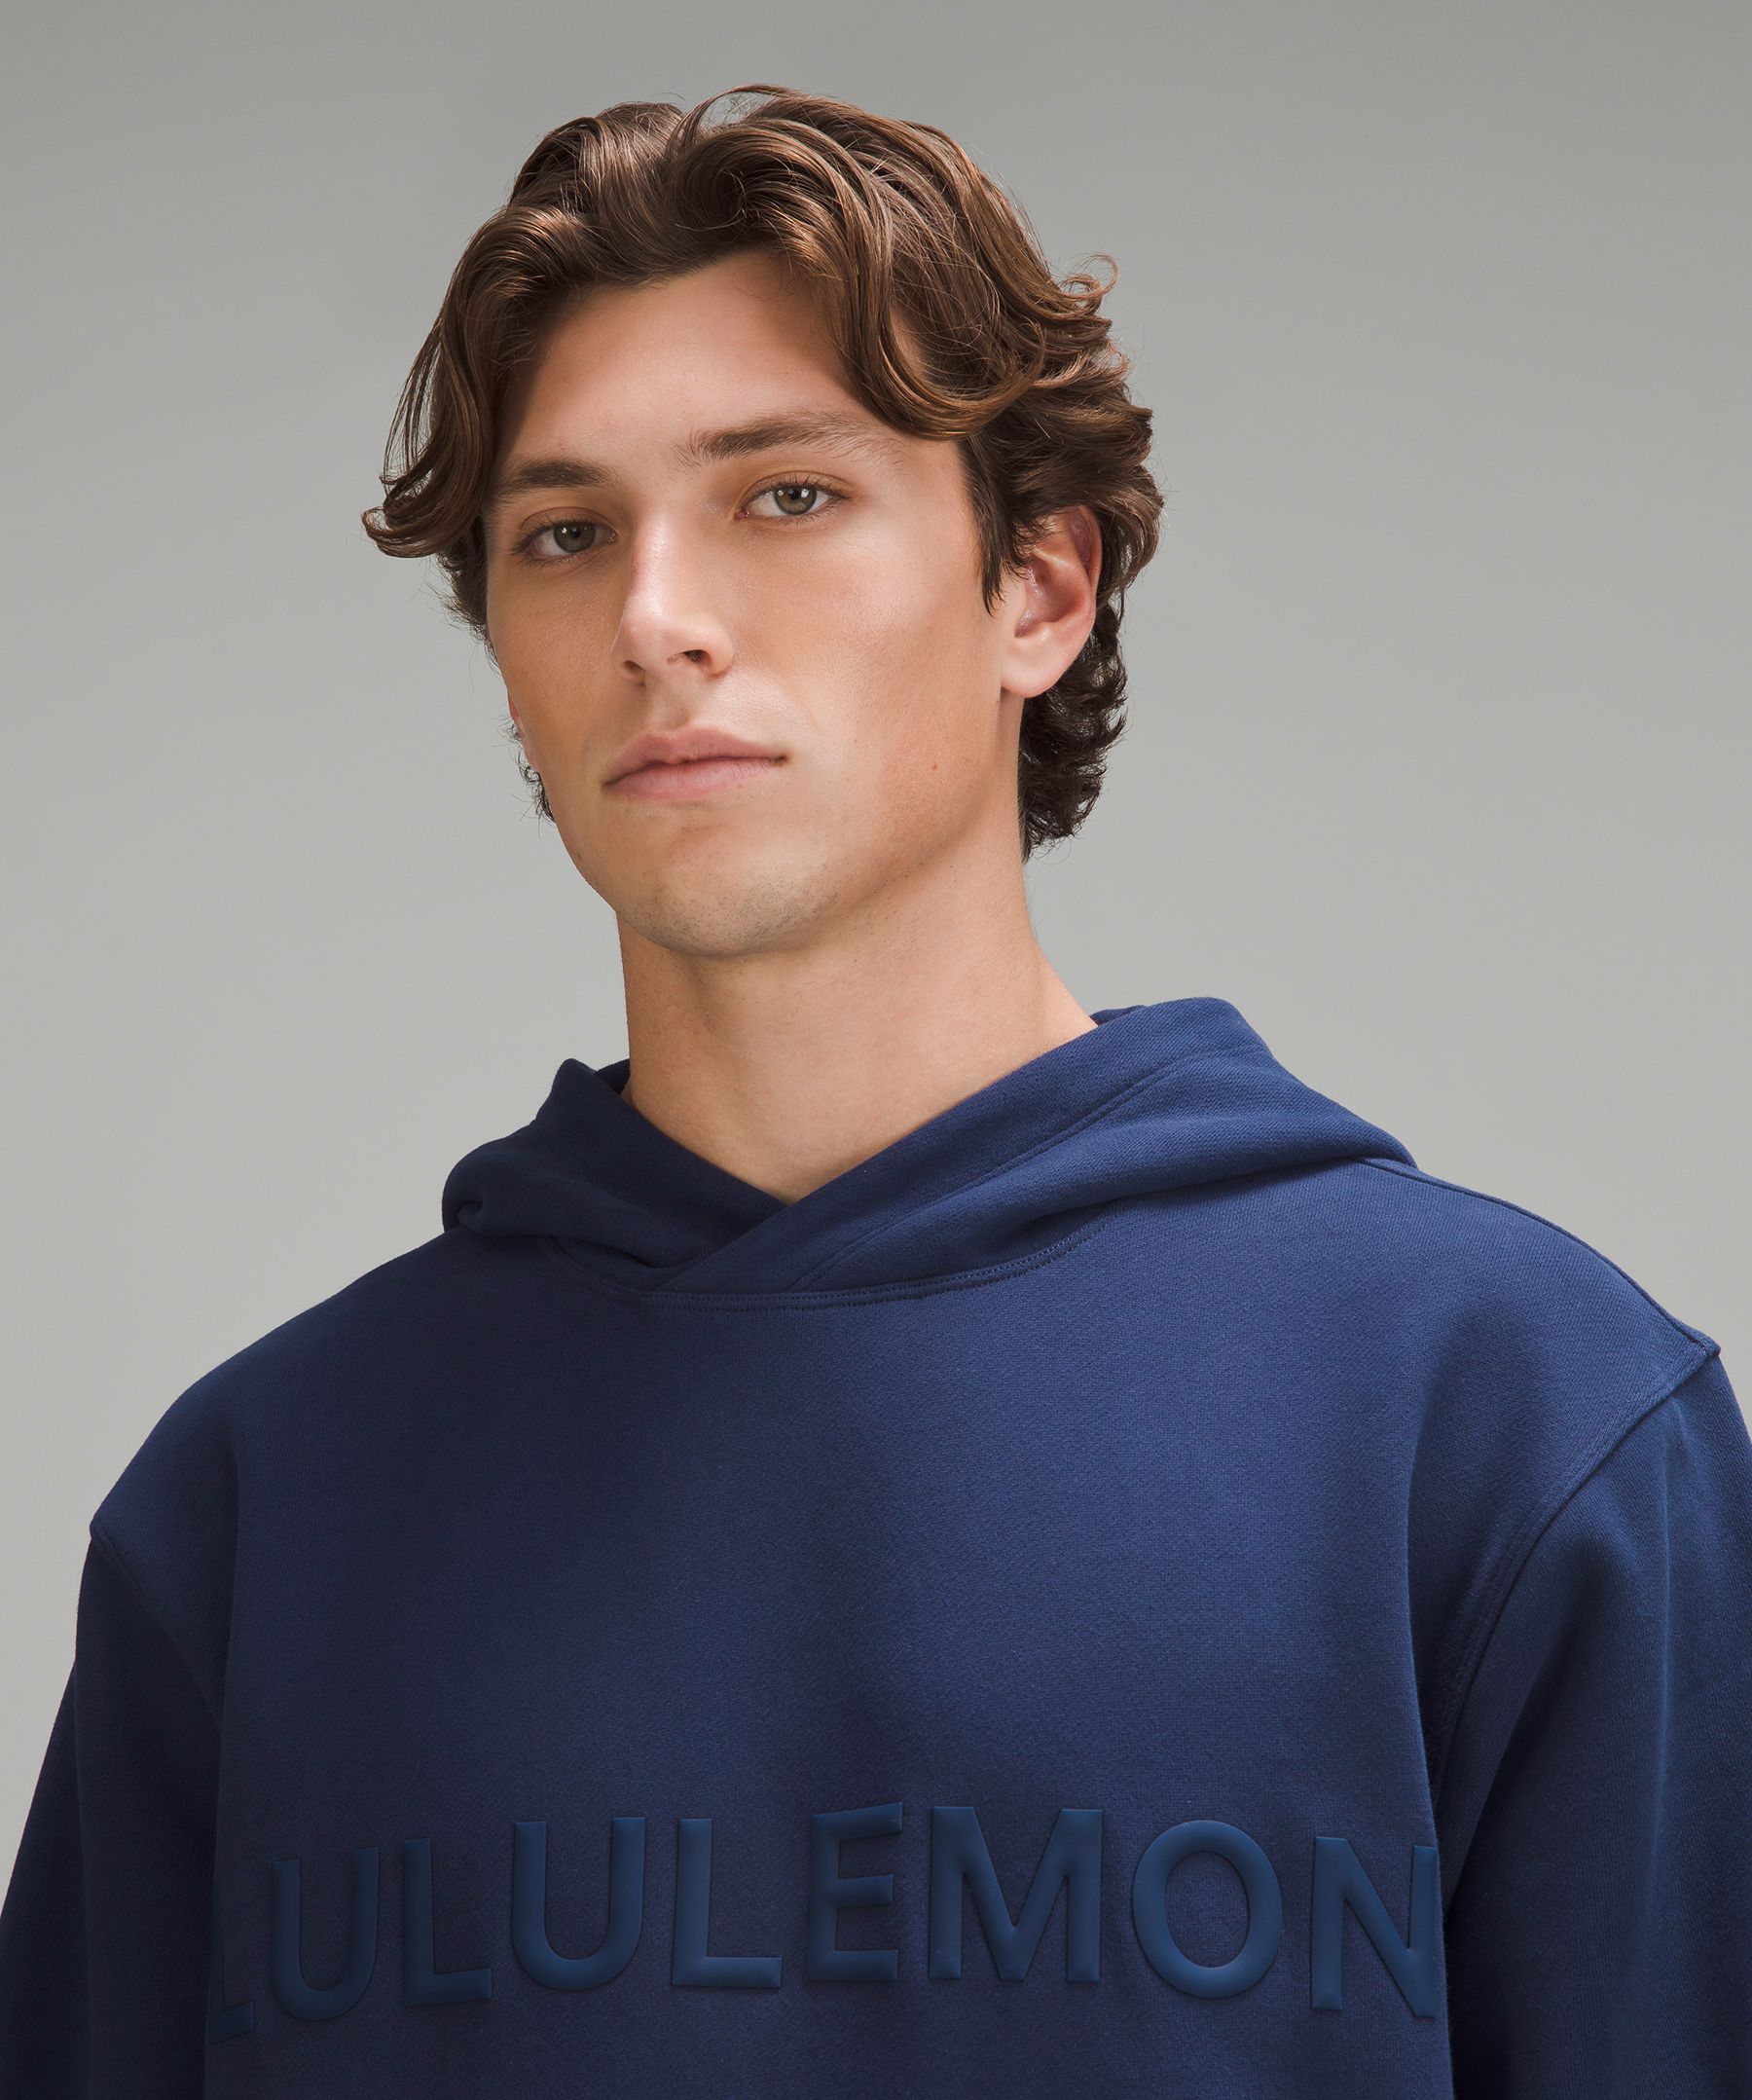 Lululemon OOTD! #lululemon #lululemonootd - Steady state hoodie in es